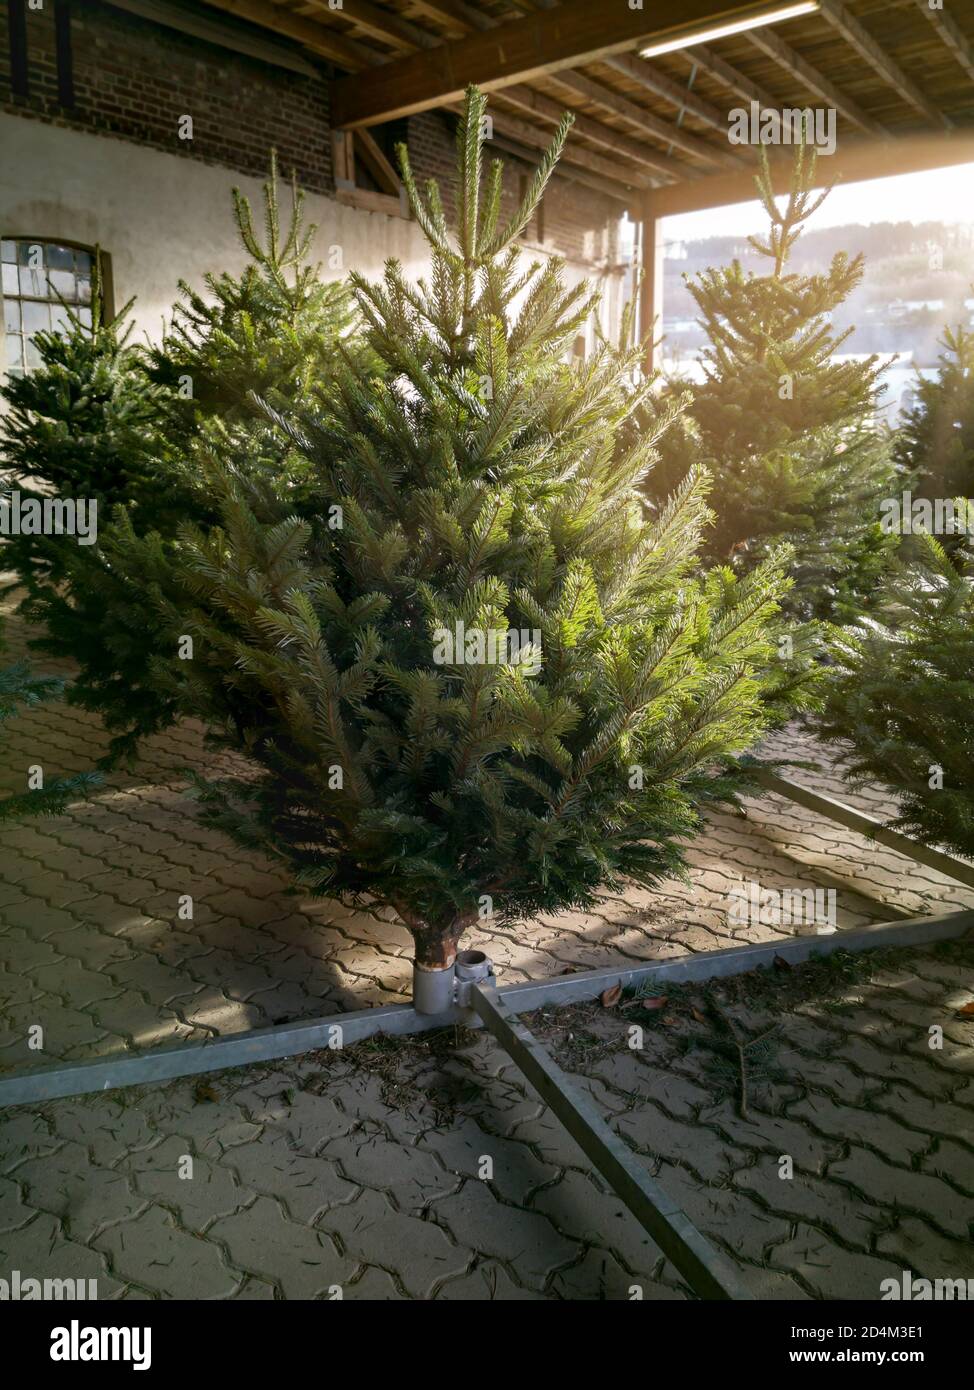 Vente d'arbres de Noël à la ferme. Arbres de Noël fraîchement abattus, les clients peuvent choisir leur arbre parfait parmi une large gamme. Banque D'Images